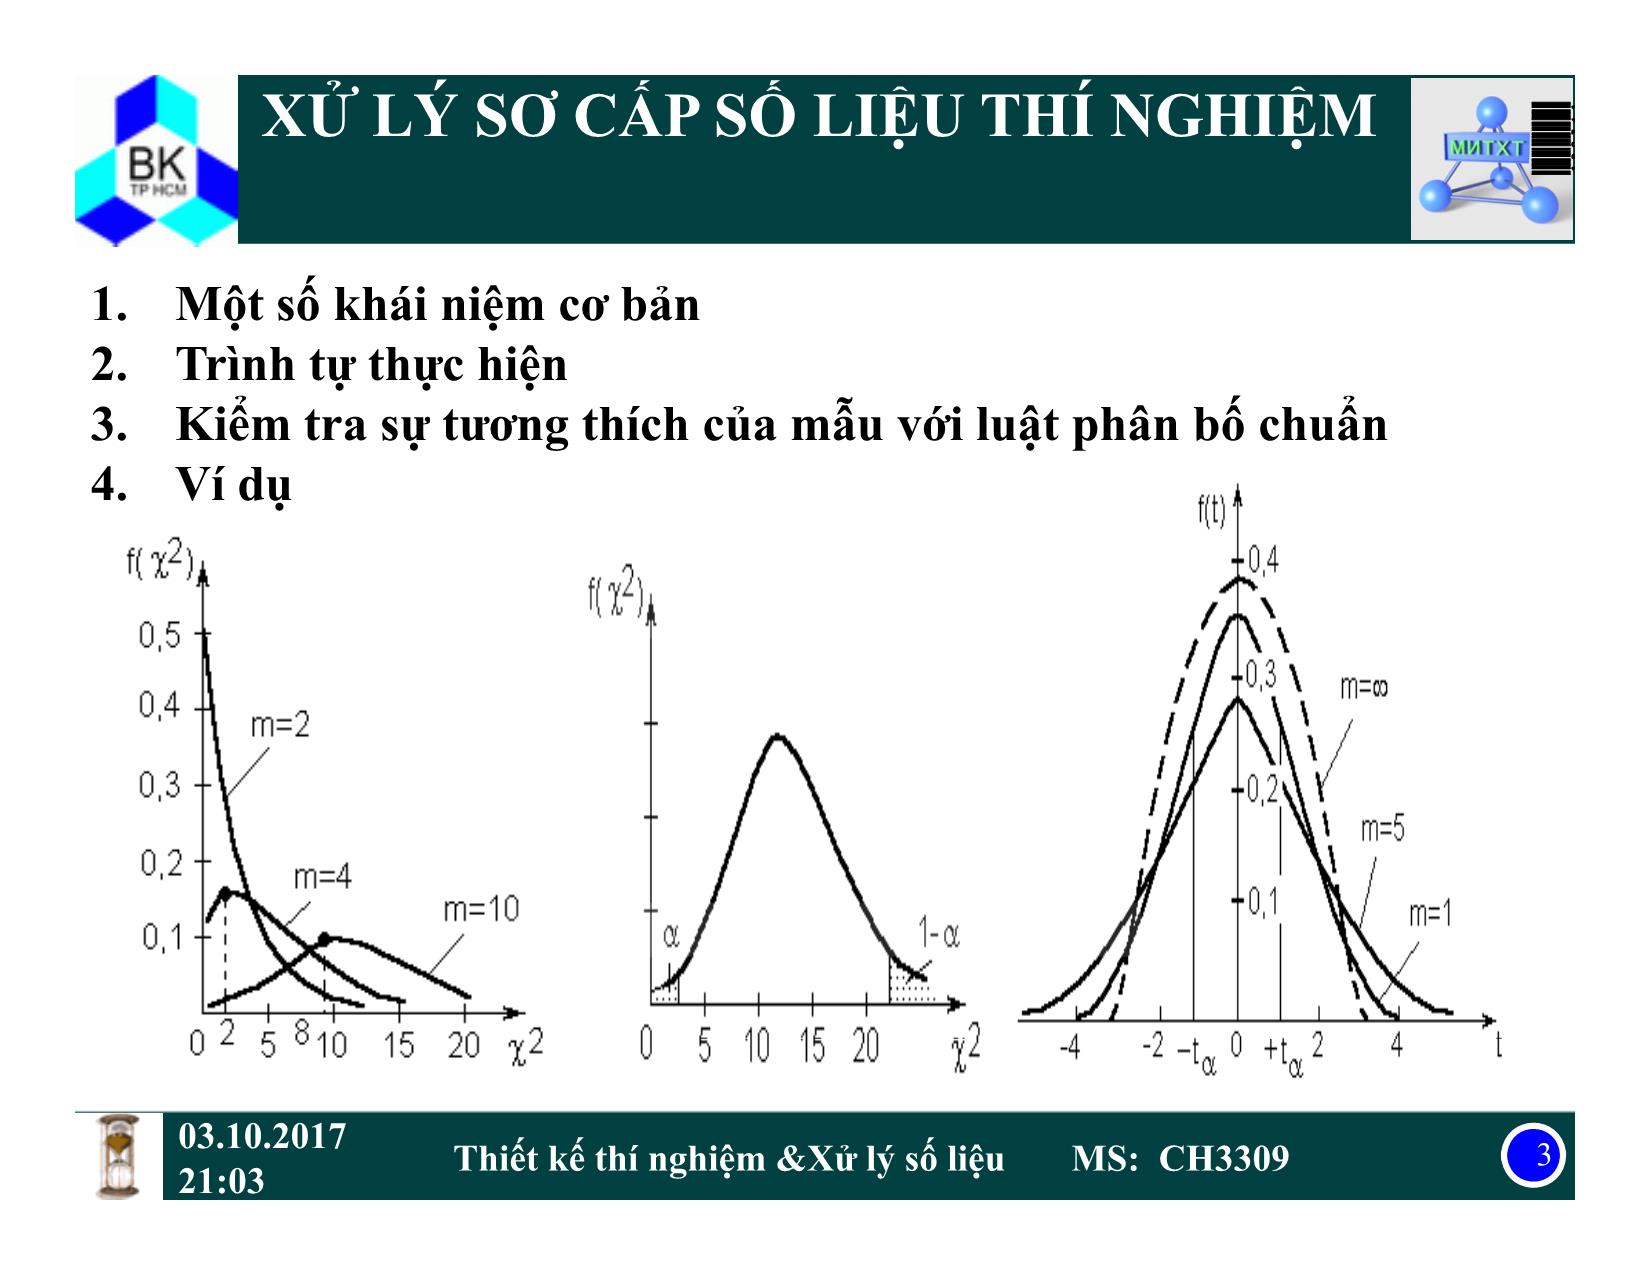 Bài giảng Thiết kế thí nghiệm và xử lý số liệu - Chương: Xử lý sơ cấp số liệu thí nghiệm - Trịnh Văn Dũng trang 3